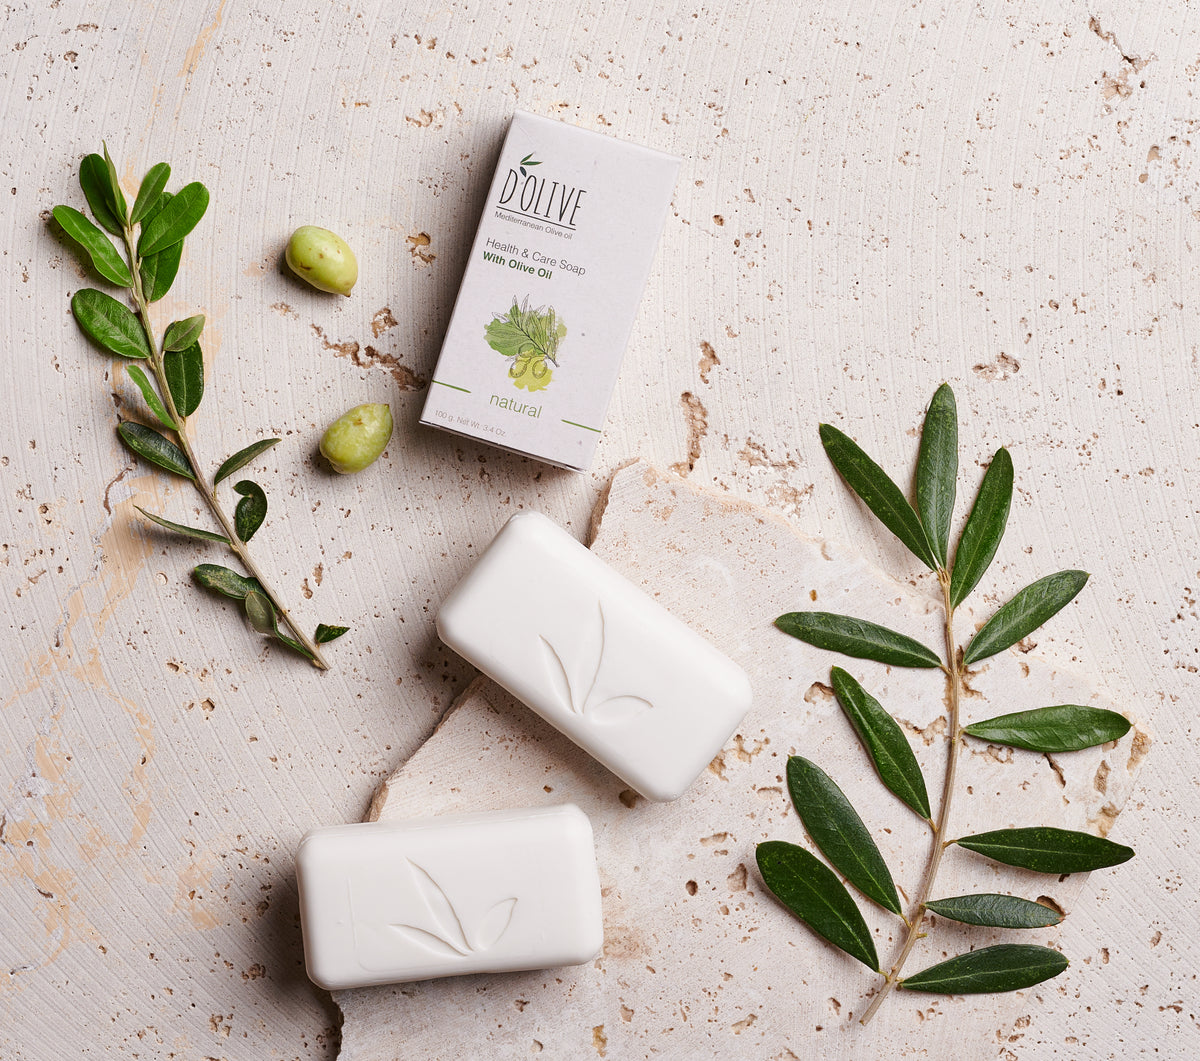 The Perfect Olive Oil Soap Recipe: Dolive Australia